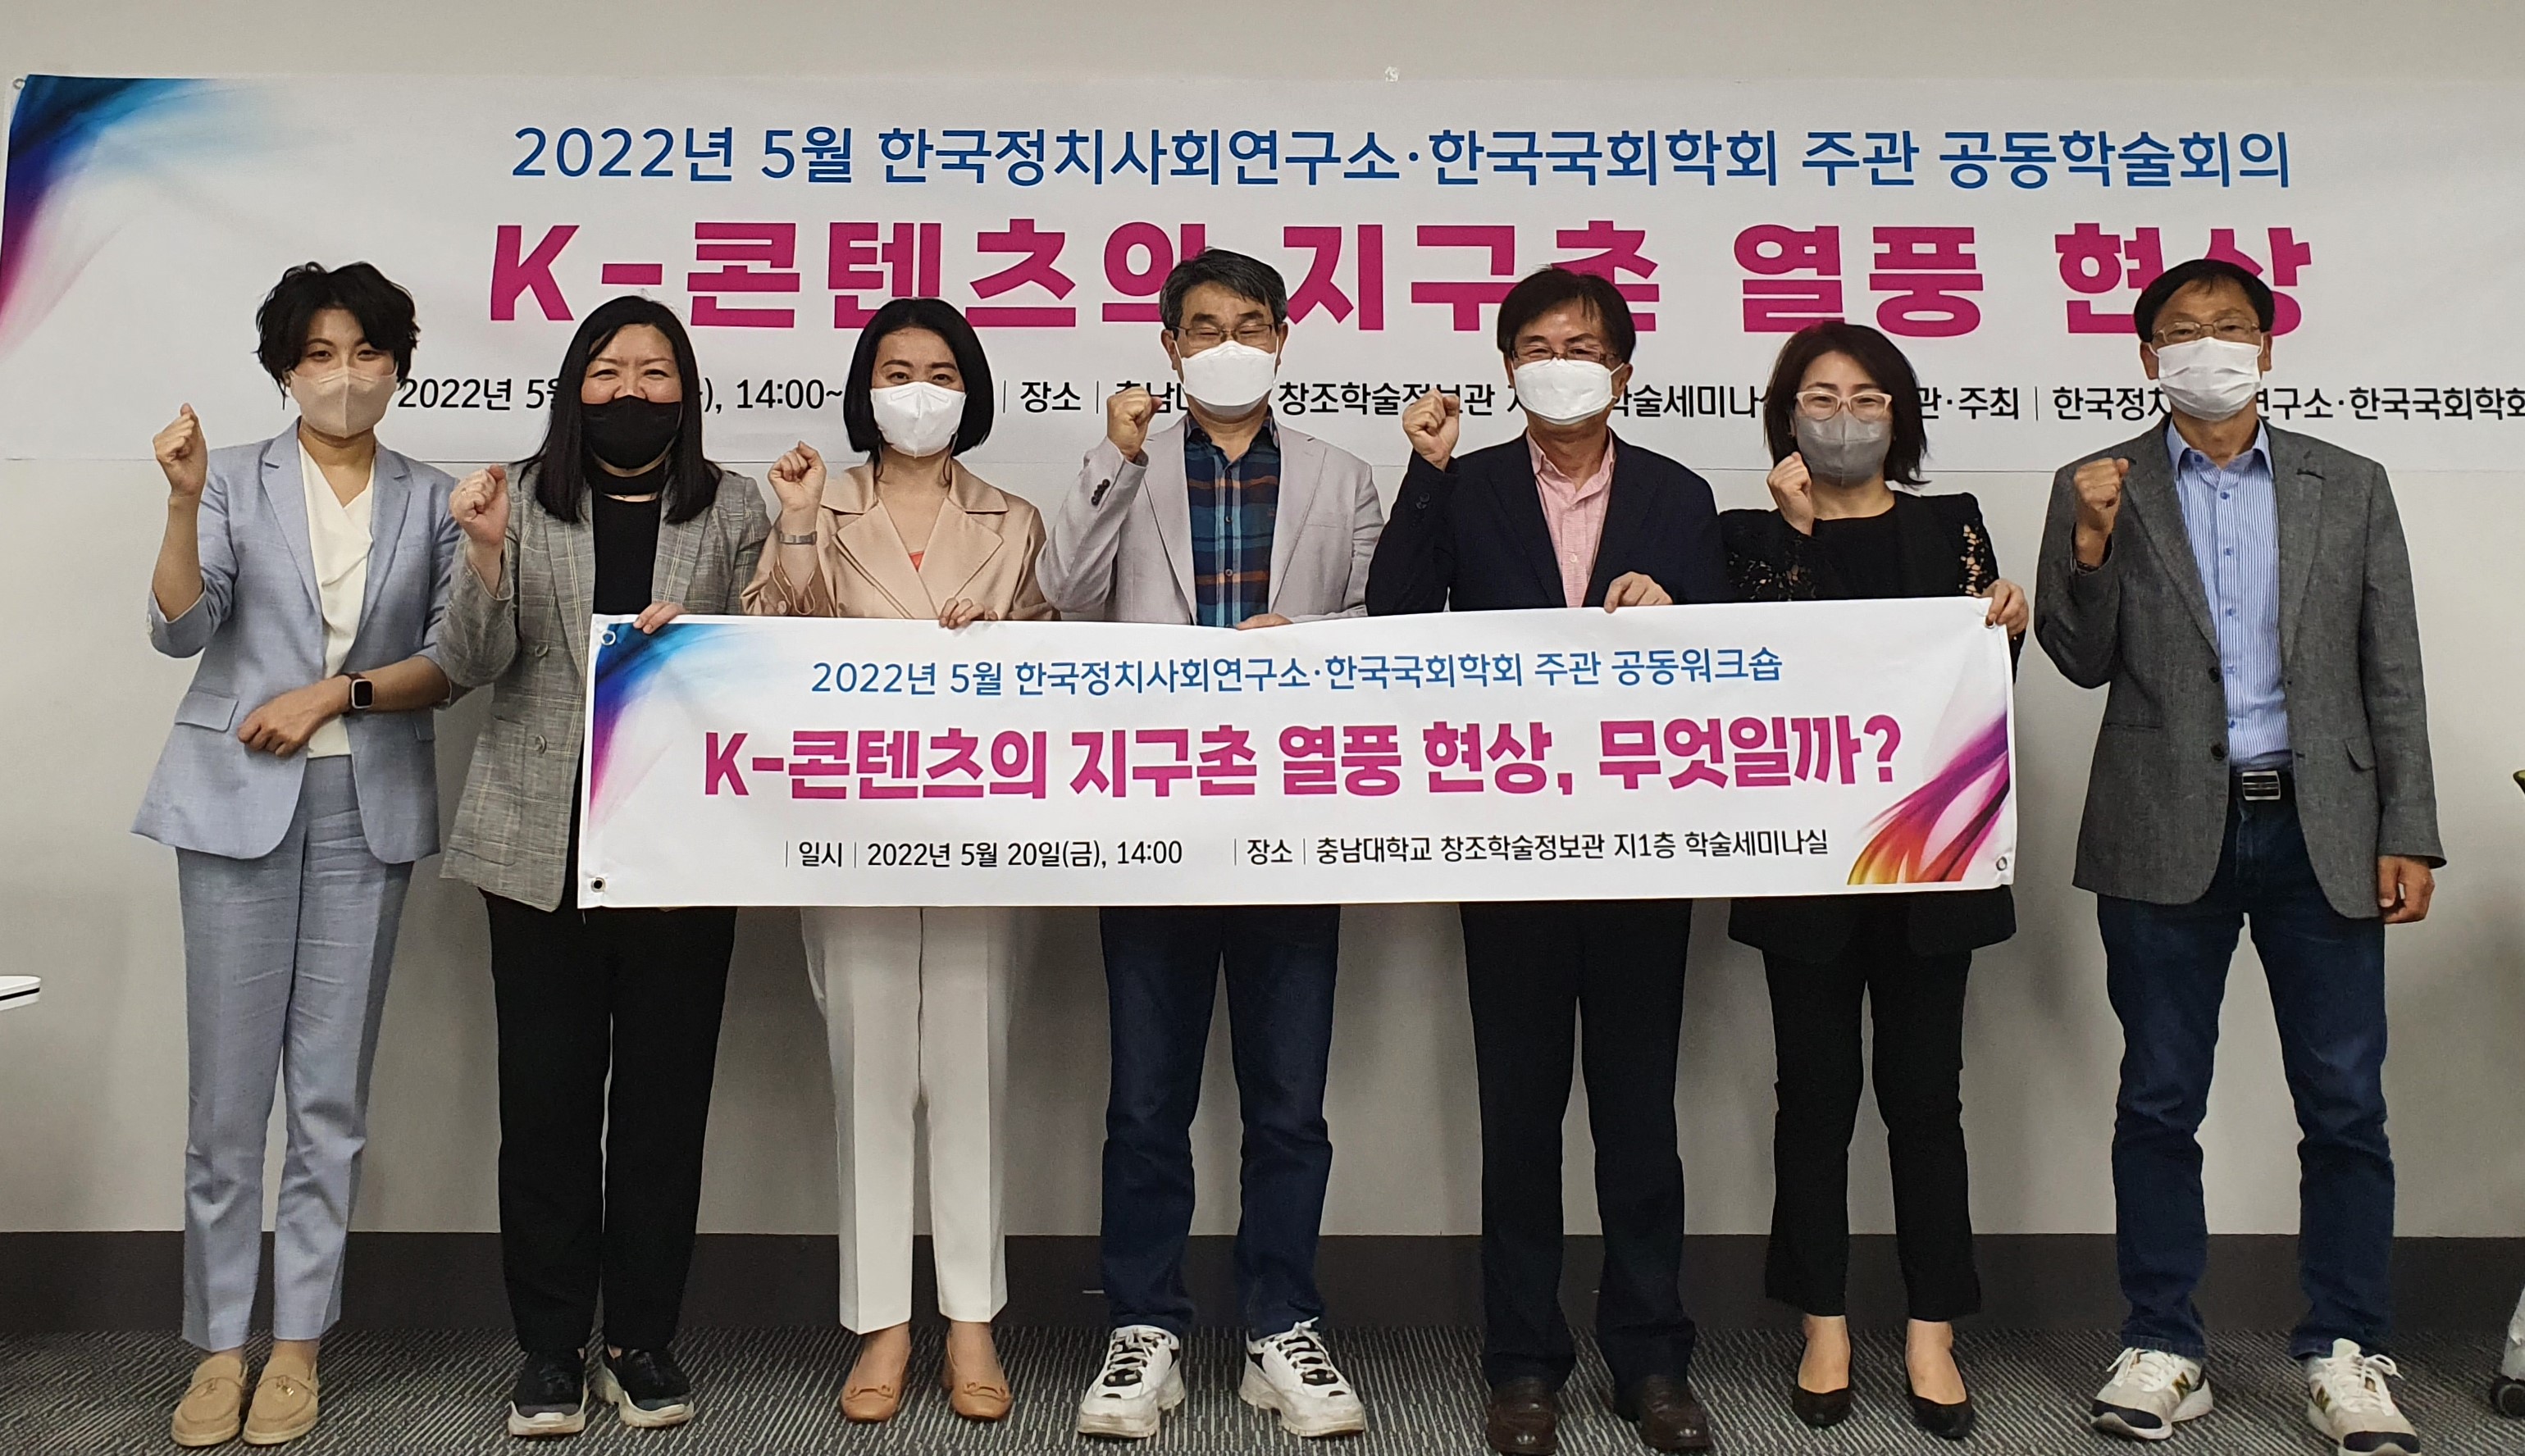 K-콘텐츠의 지구촌 열풍 현상 관련 공동워크숍 개최 